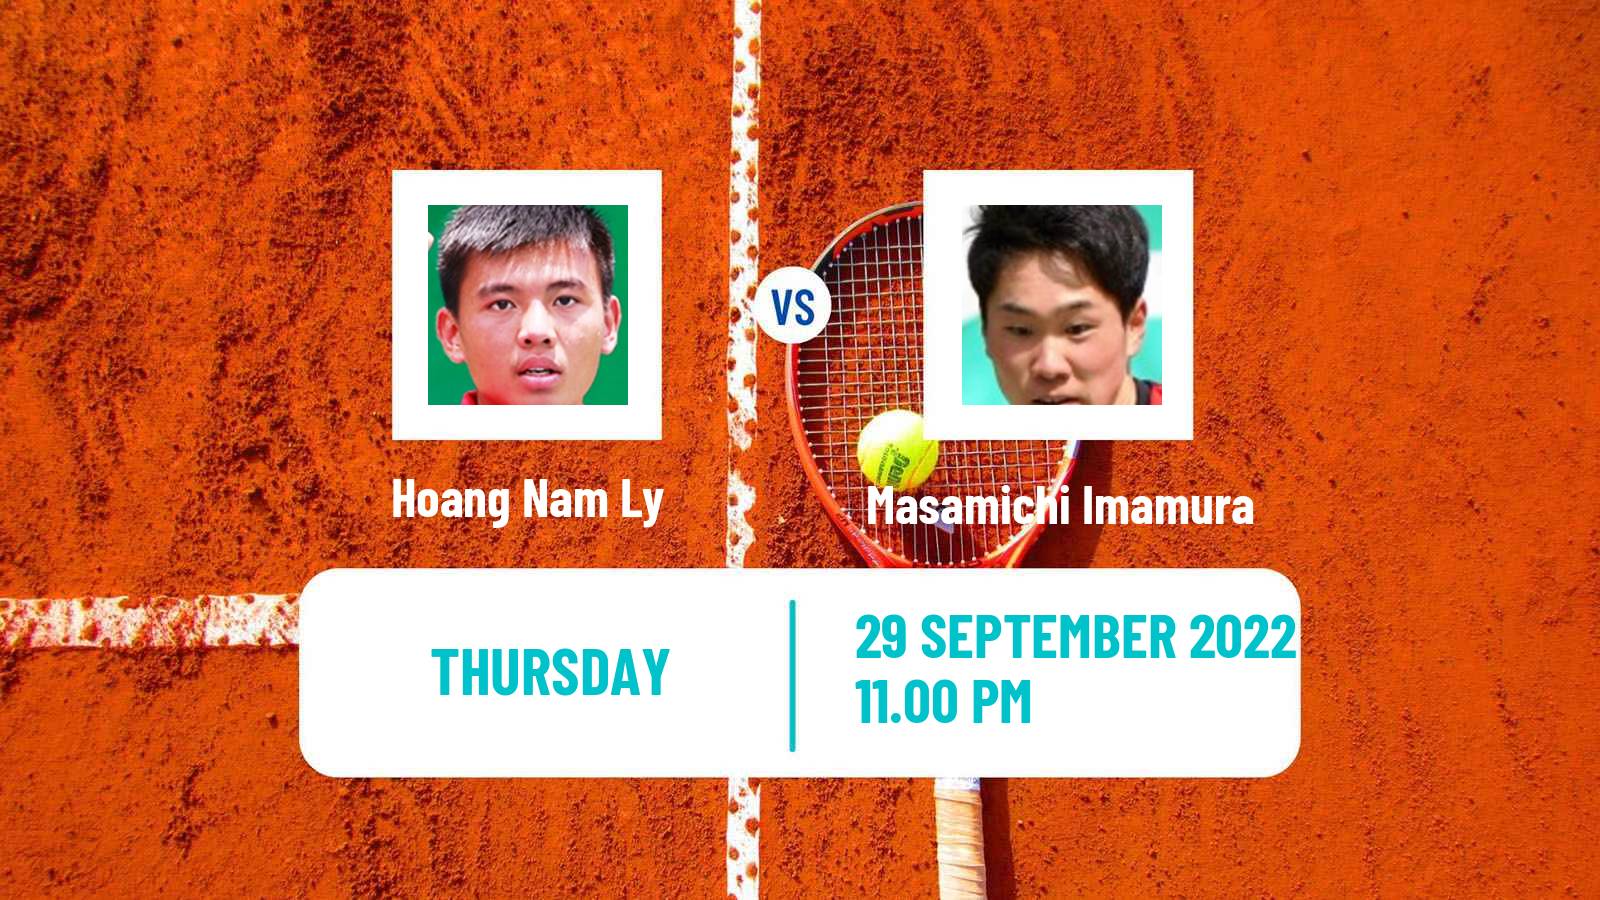 Tennis ITF Tournaments Hoang Nam Ly - Masamichi Imamura